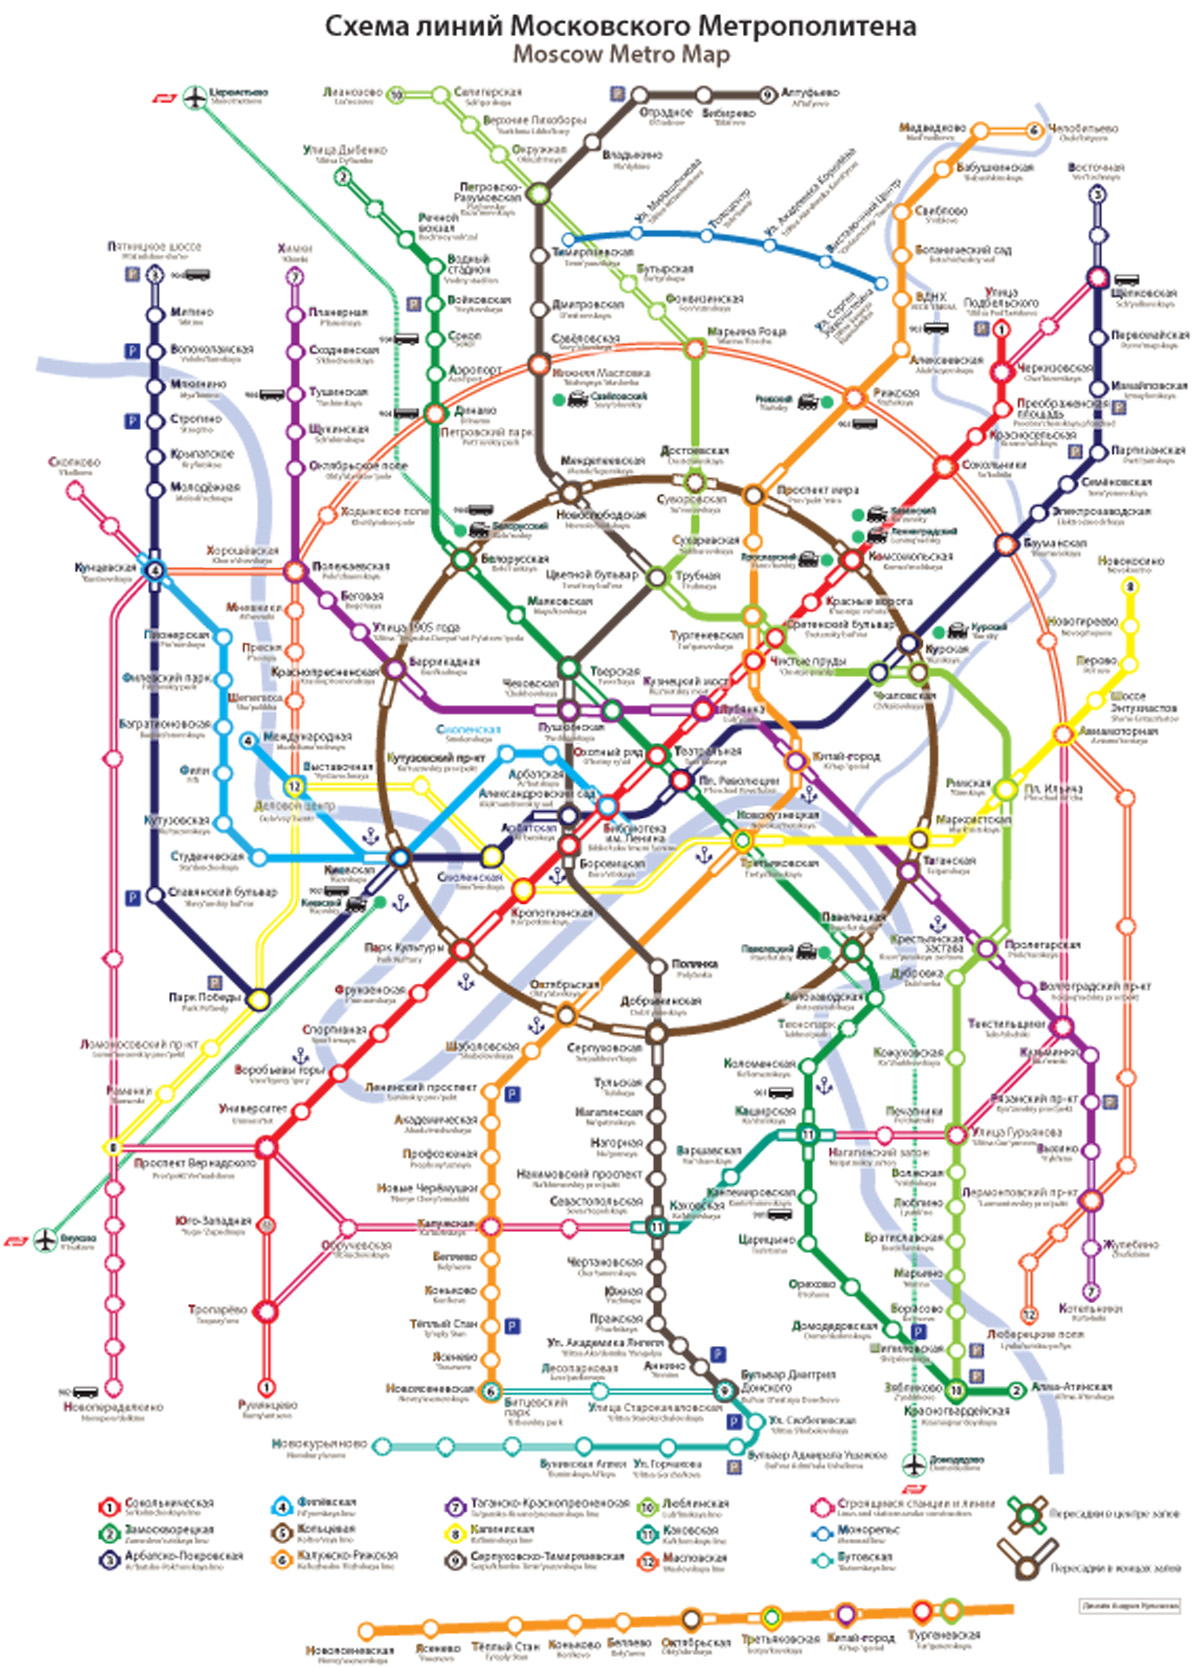 Конкурс на новую схему московского метро. Все работы